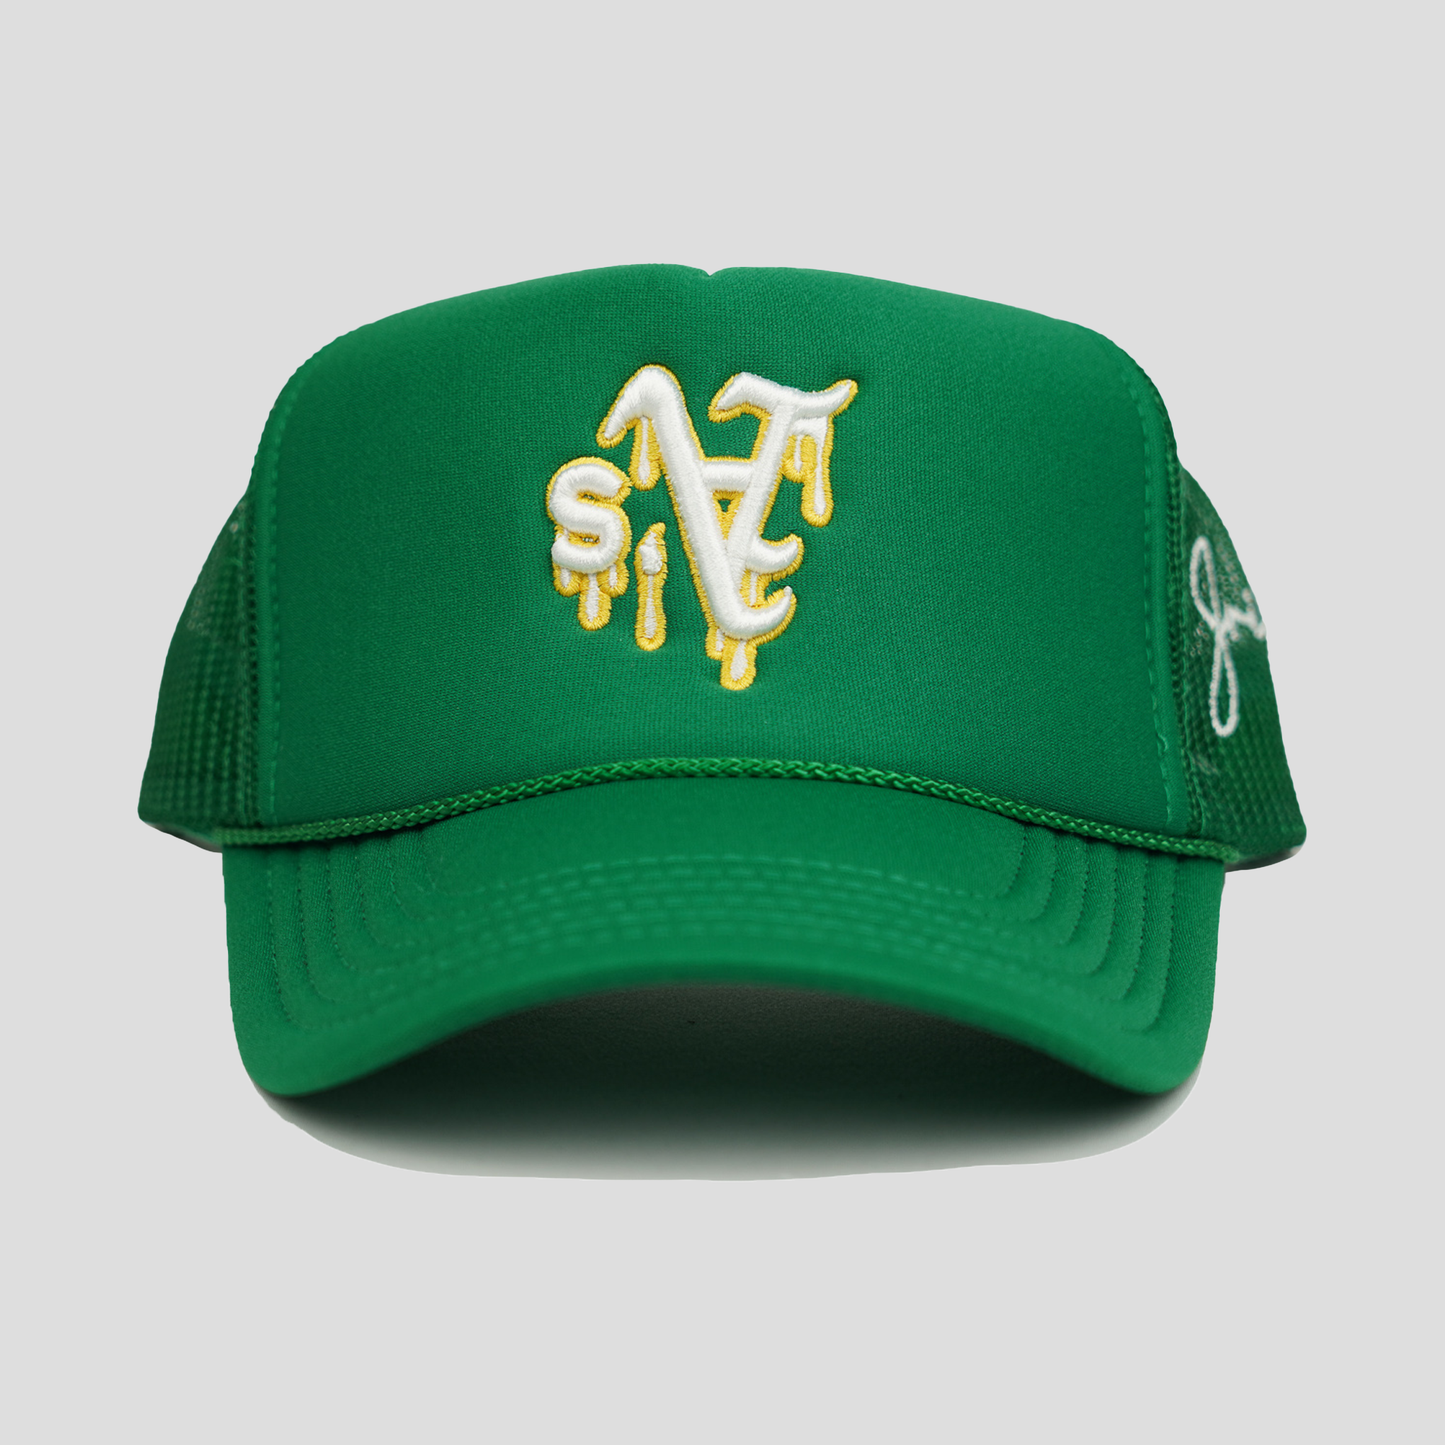 A Dripping Trucker Hat (GREEN)